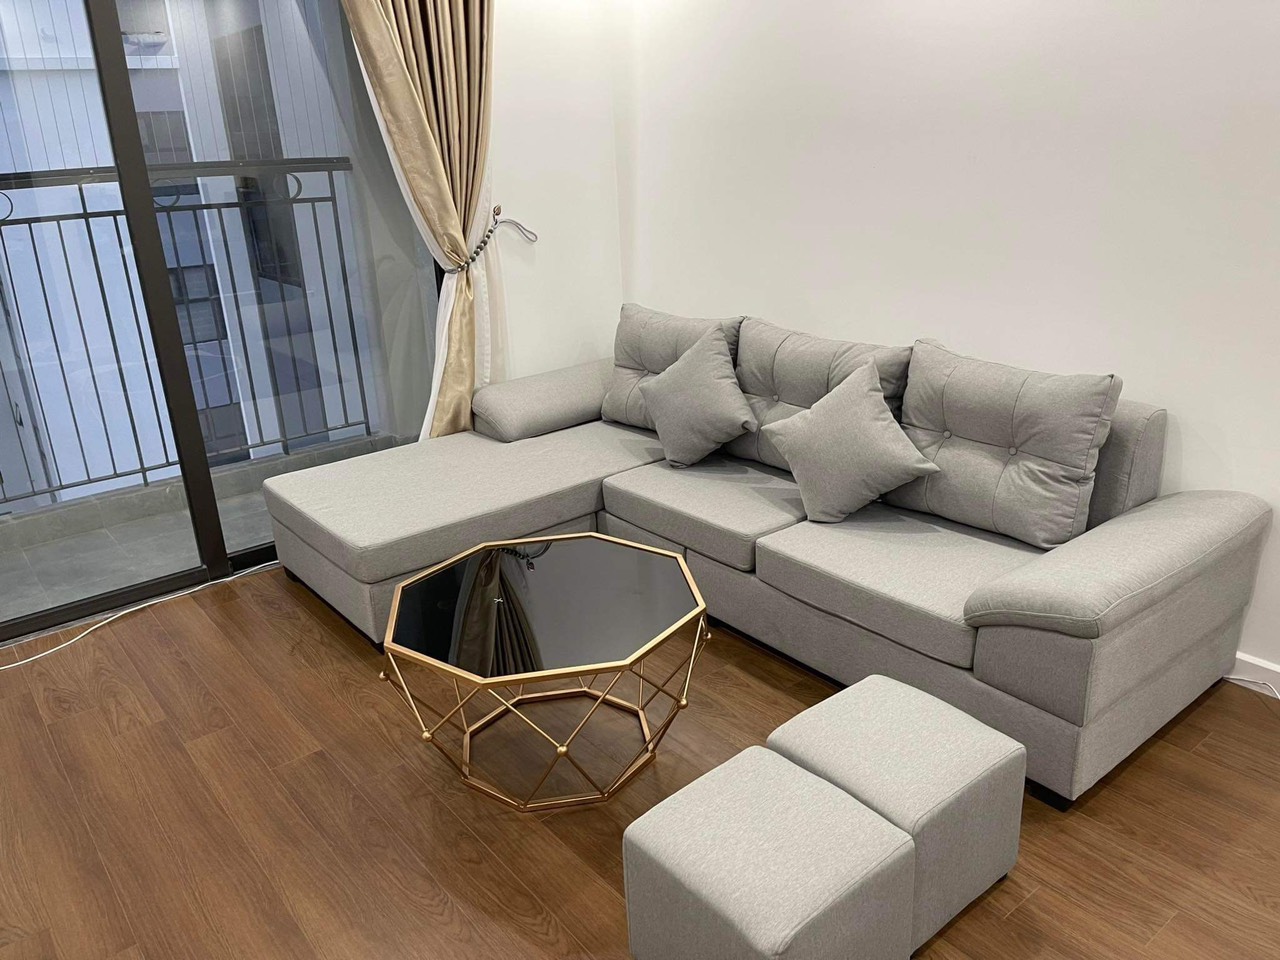 Lưu ý chọn sofa chung cư đẹp cho mùa hè - Ảnh 2